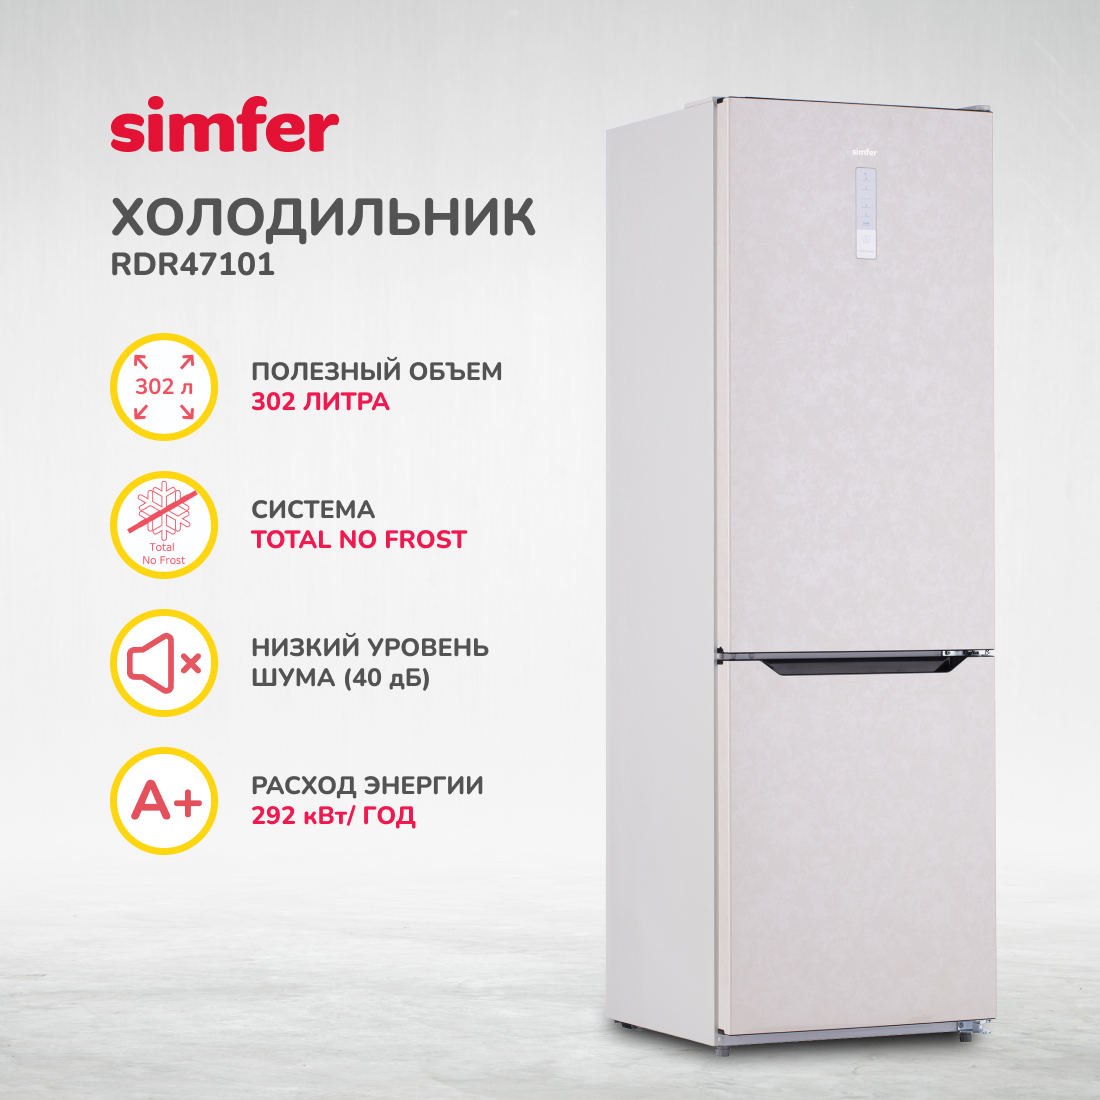 Холодильник Simfer RDR47101, No Frost, двухкамерный, 302 л, цвет бежевый